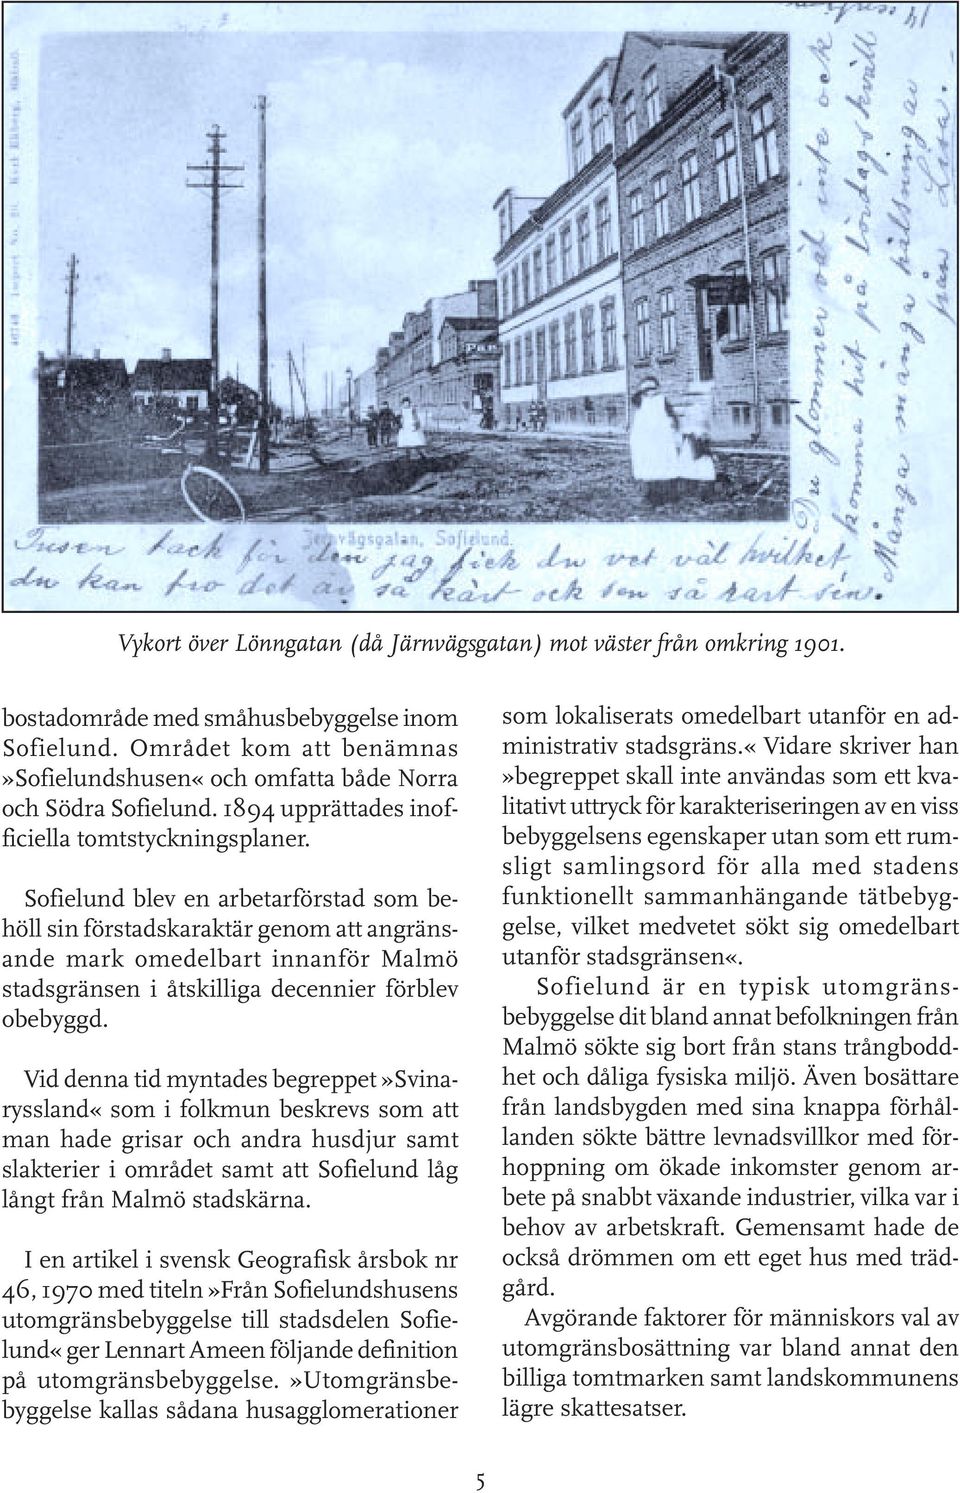 Sofielund blev en arbetarförstad som behöll sin förstadskaraktär genom att angränsande mark omedelbart innanför Malmö stadsgränsen i åtskilliga decennier förblev obebyggd.